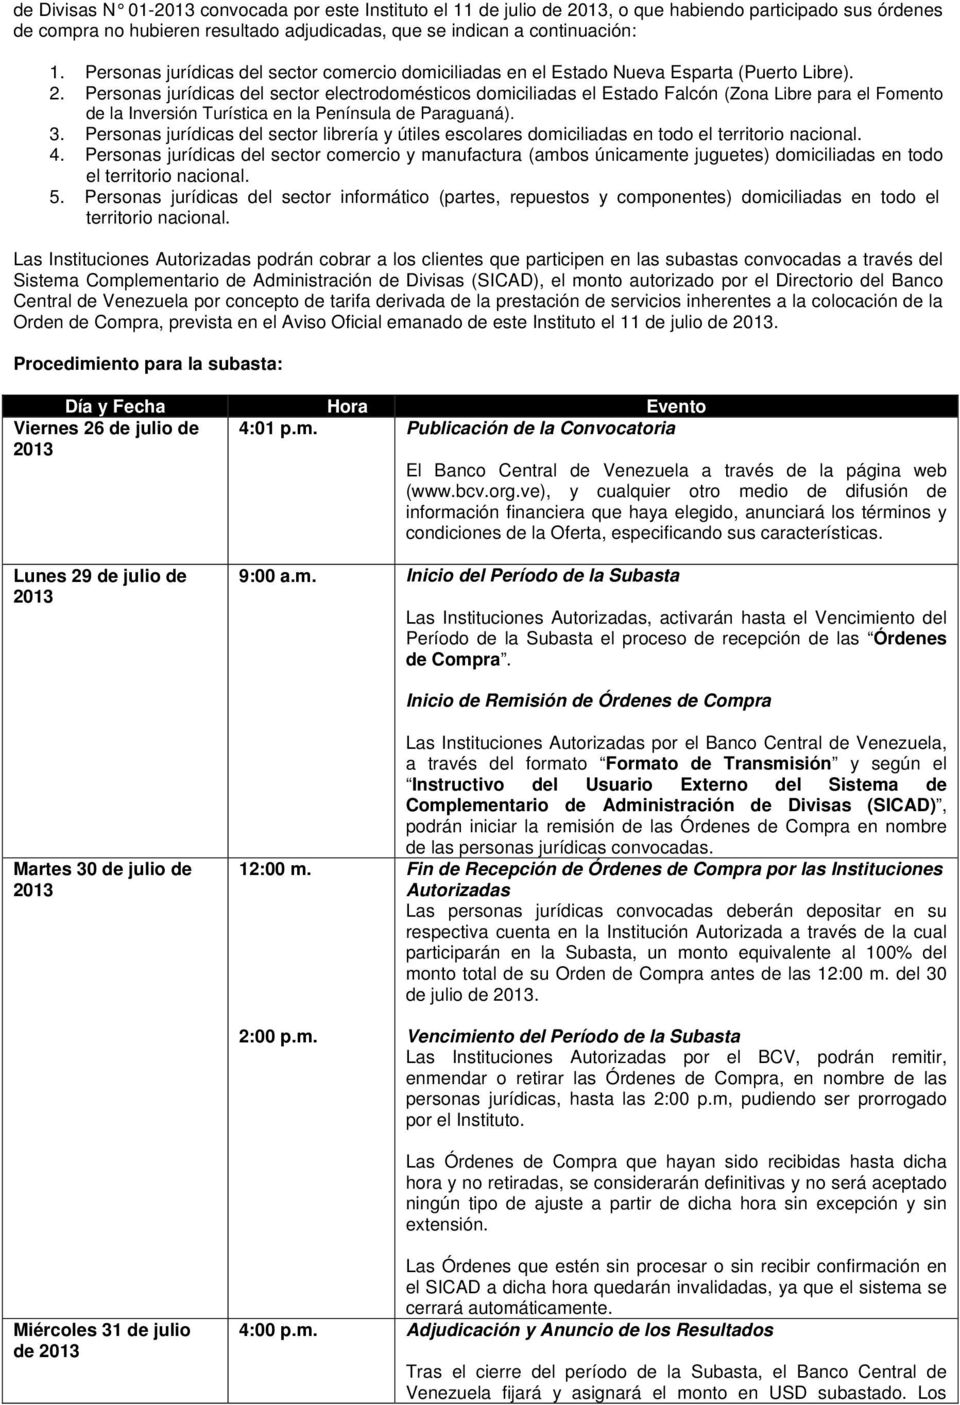 Personas jurídicas del sector electrodomésticos domiciliadas el Estado Falcón (Zona Libre para el Fomento de la Inversión Turística en la Península de Paraguaná). 3.